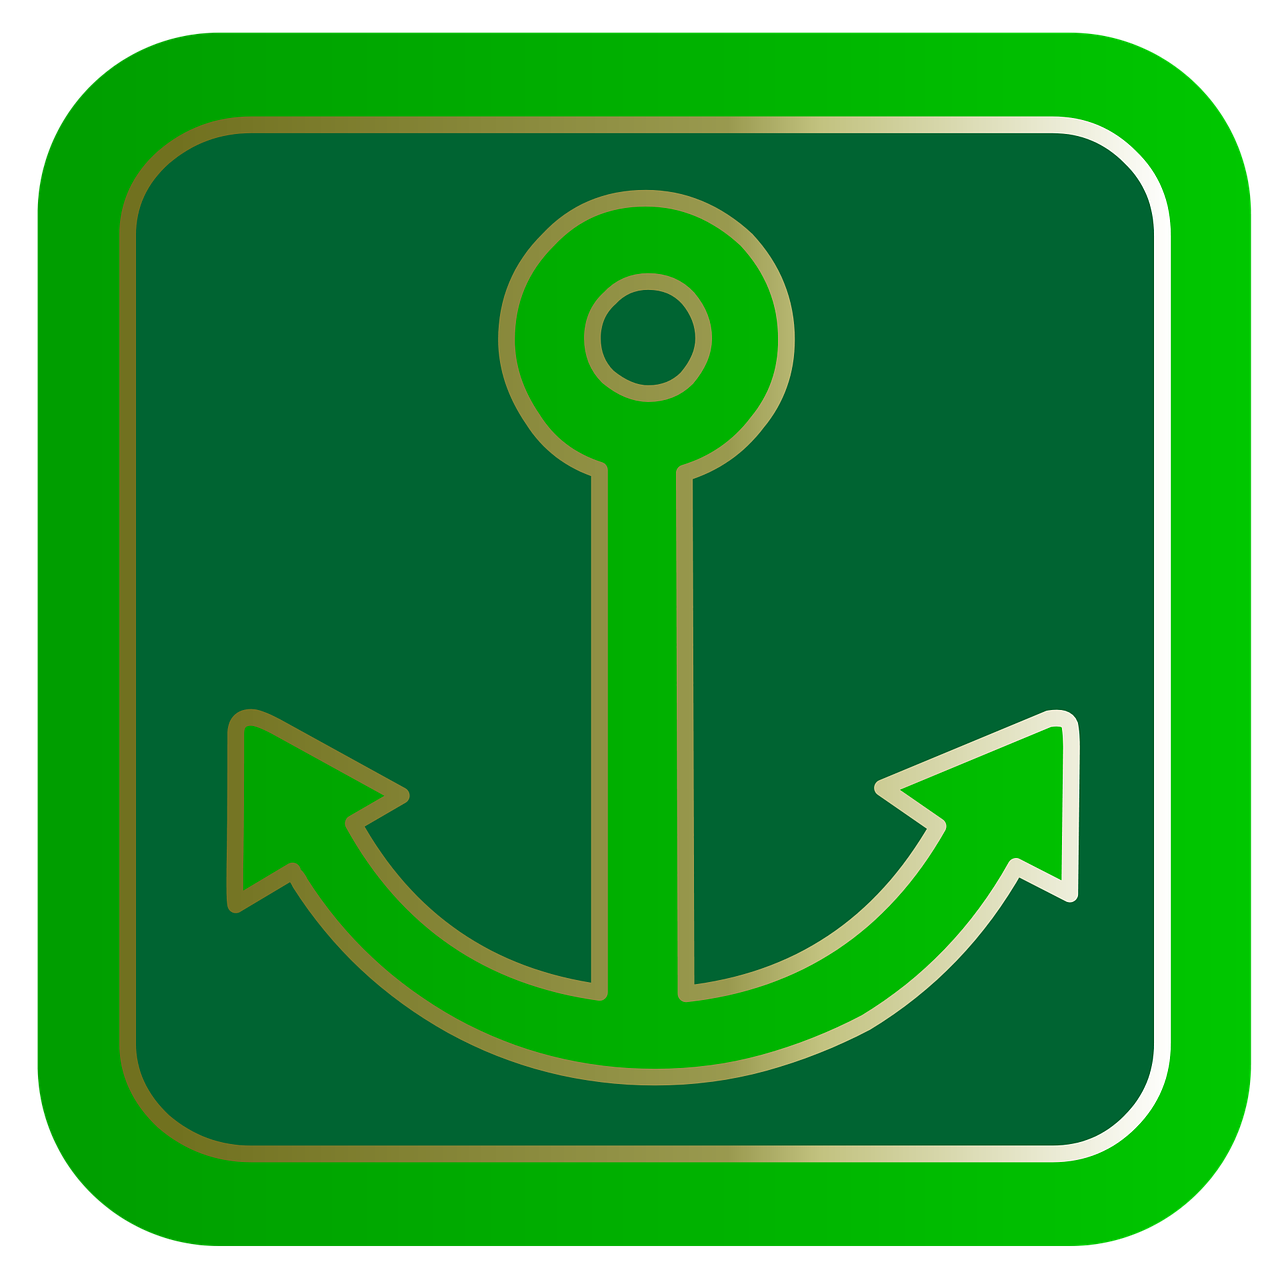 anchor button symbol free photo